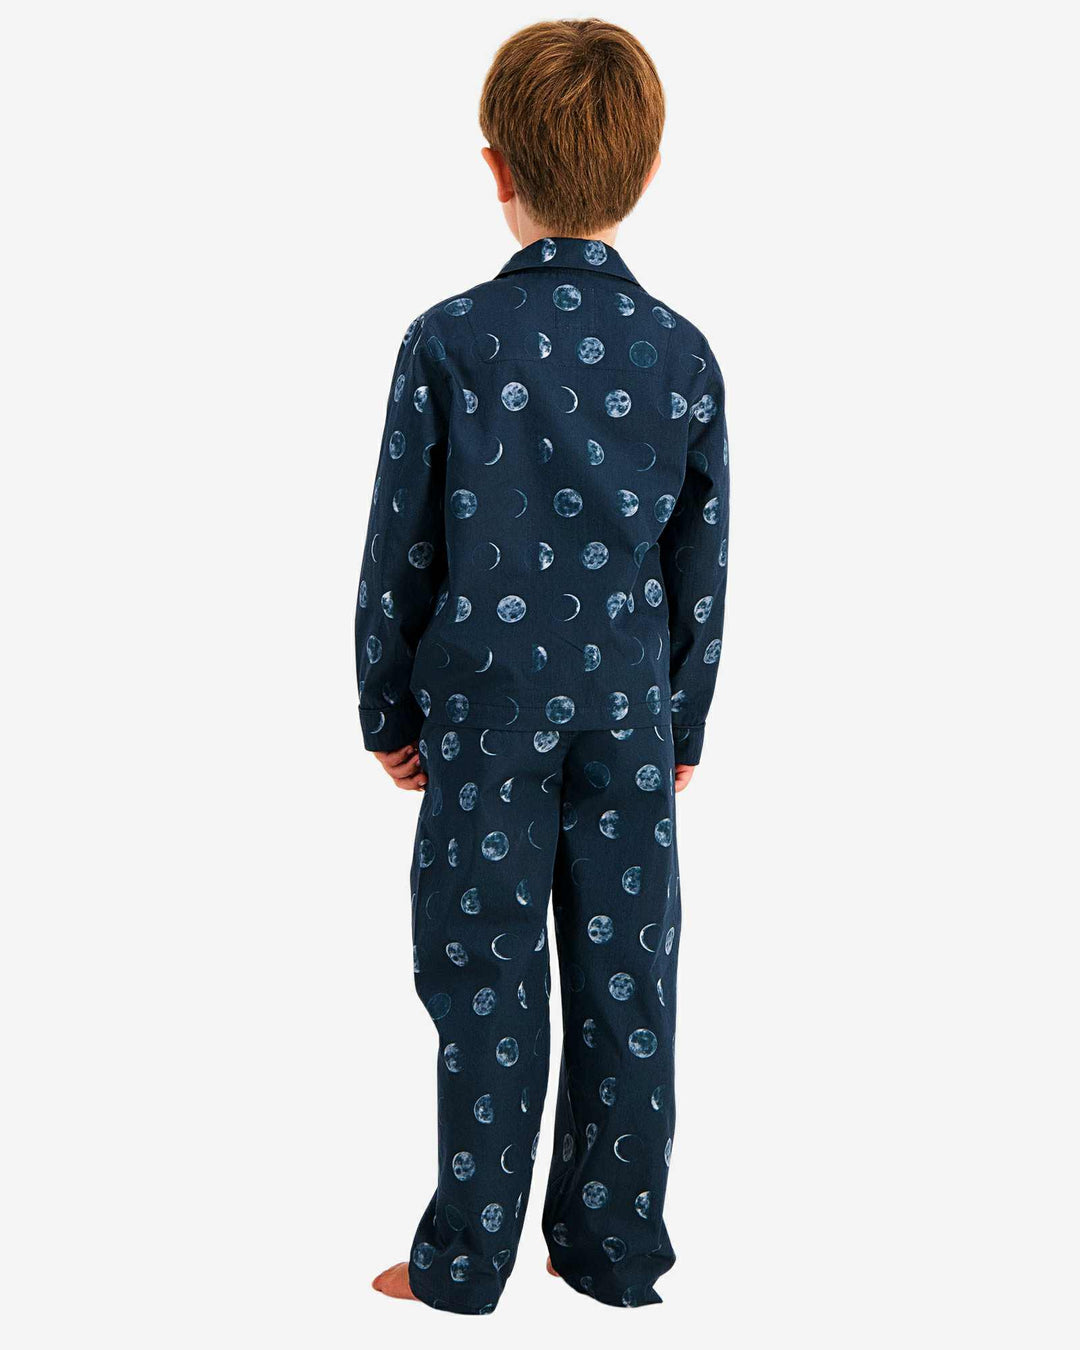 Boys pyjamas - Moons